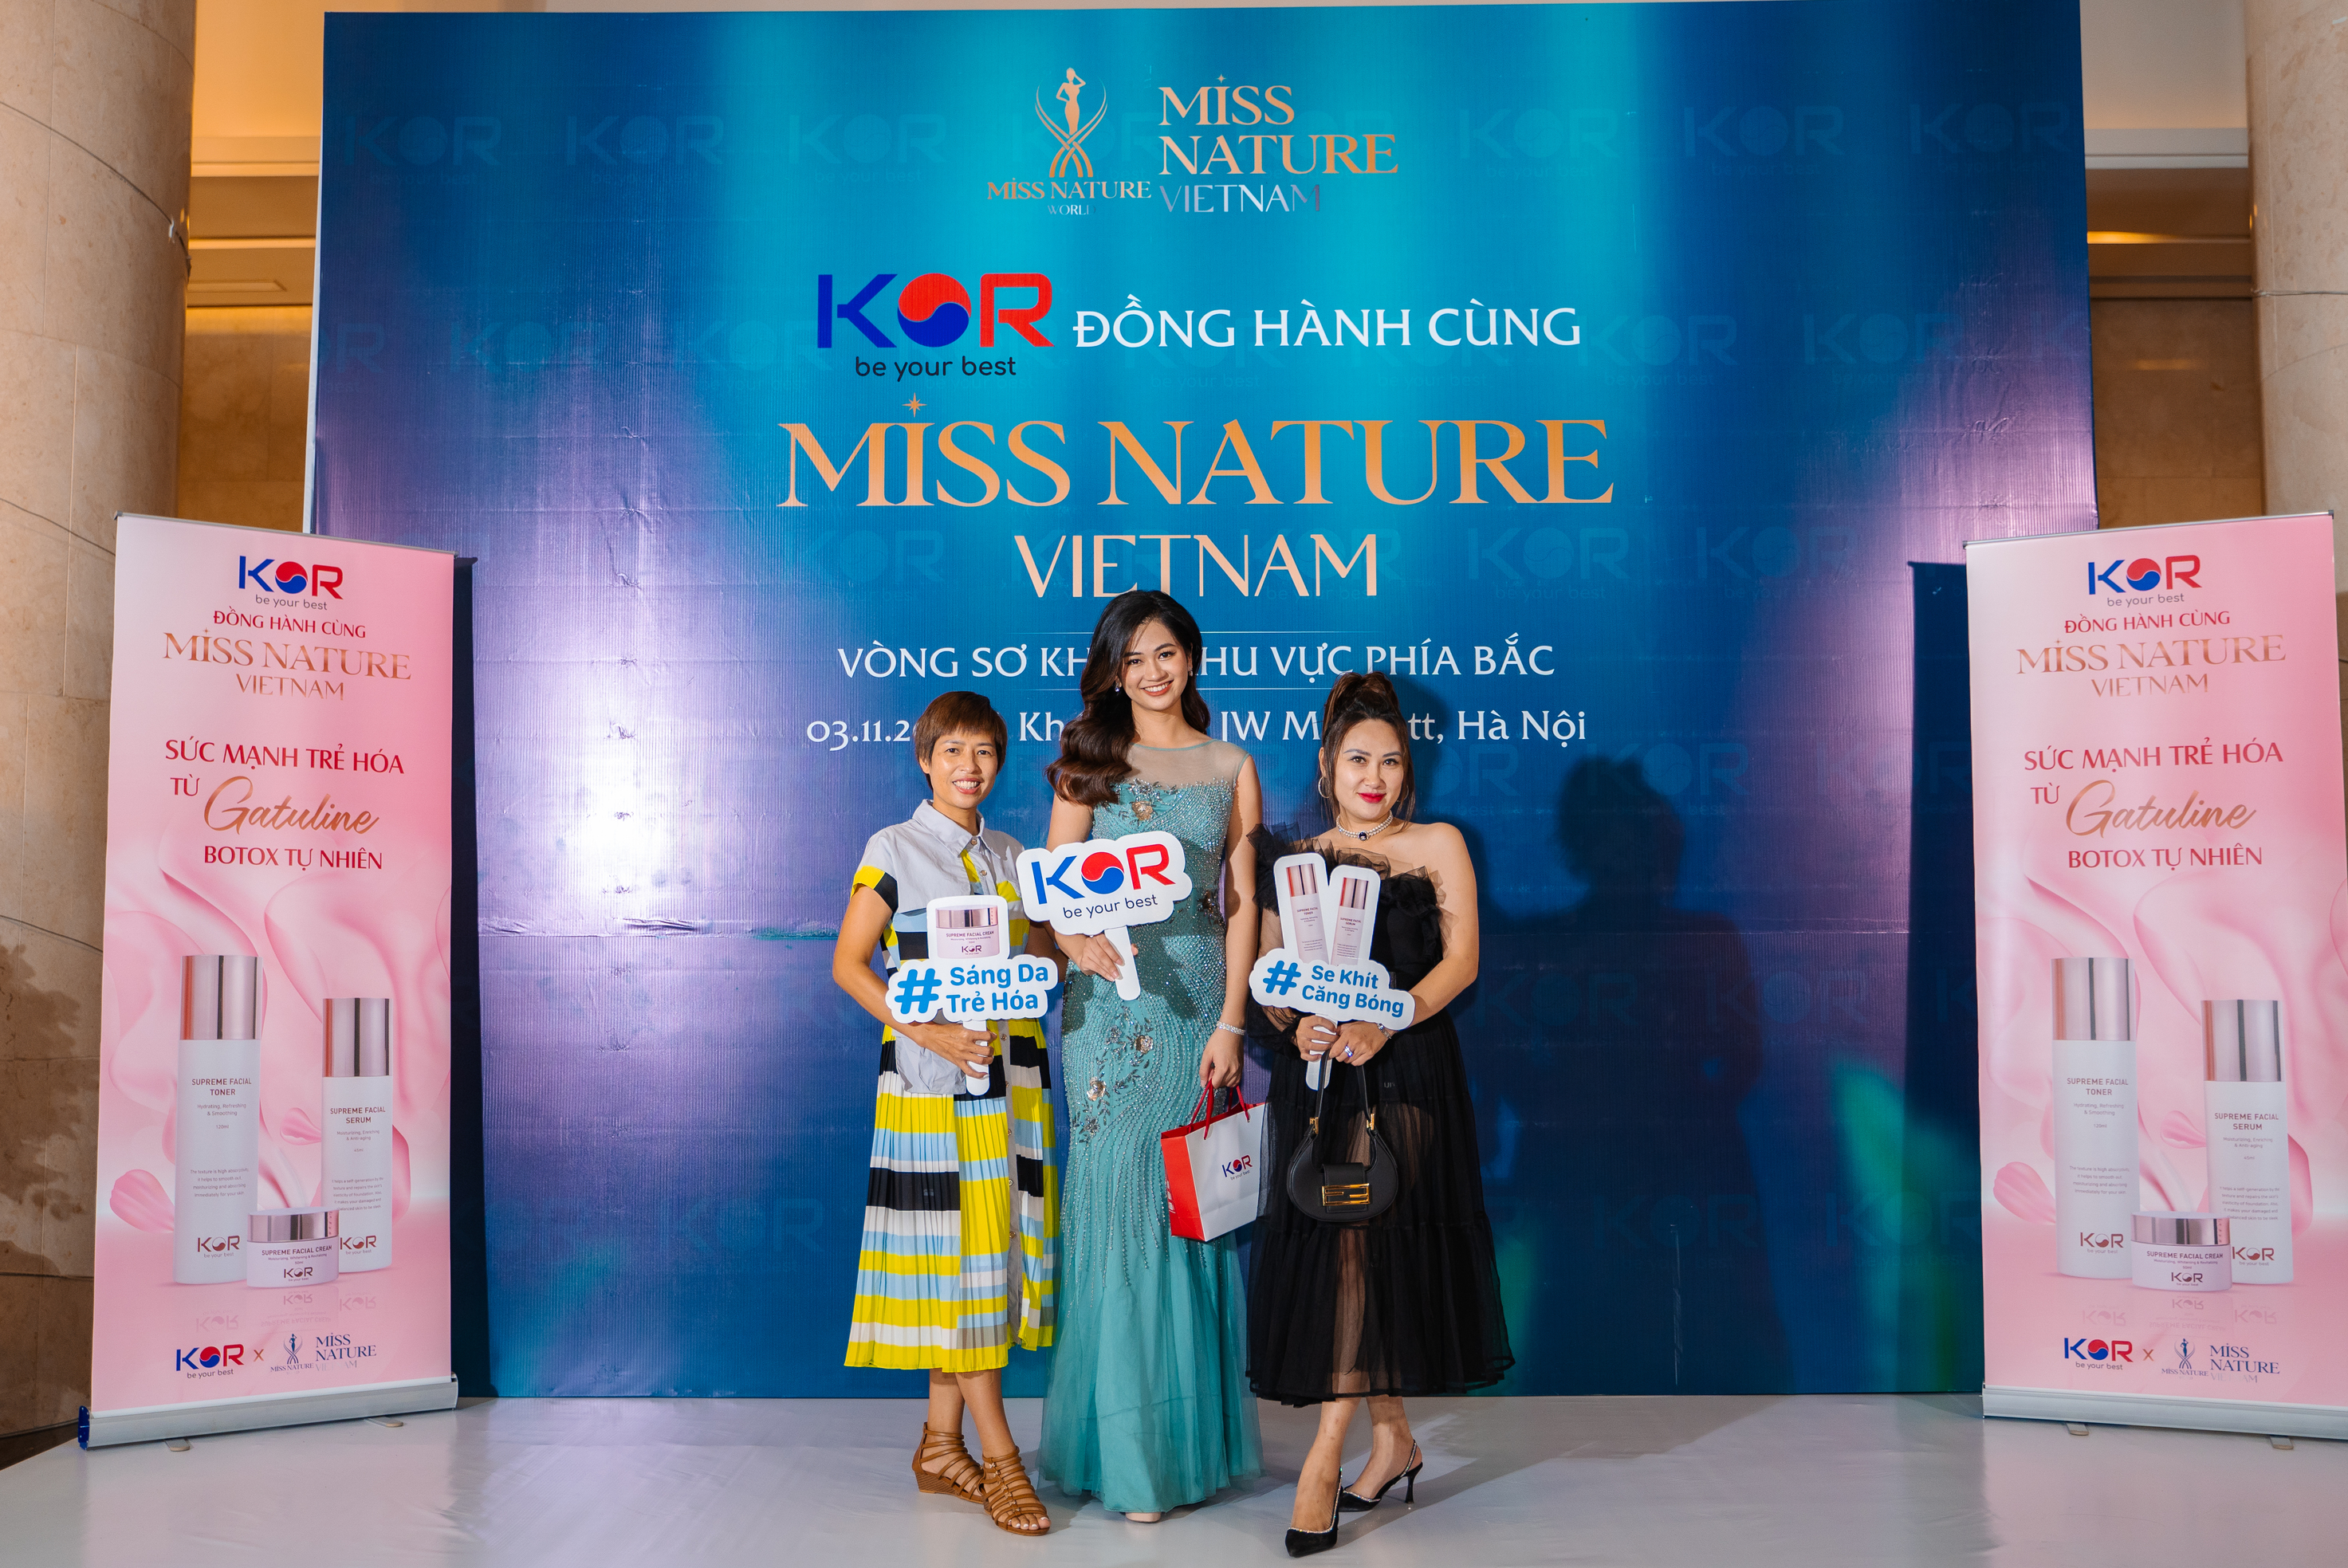 [NgôiSao.vn] KOR đồng hành cùng sự kiện Miss Nature Vietnam 2023